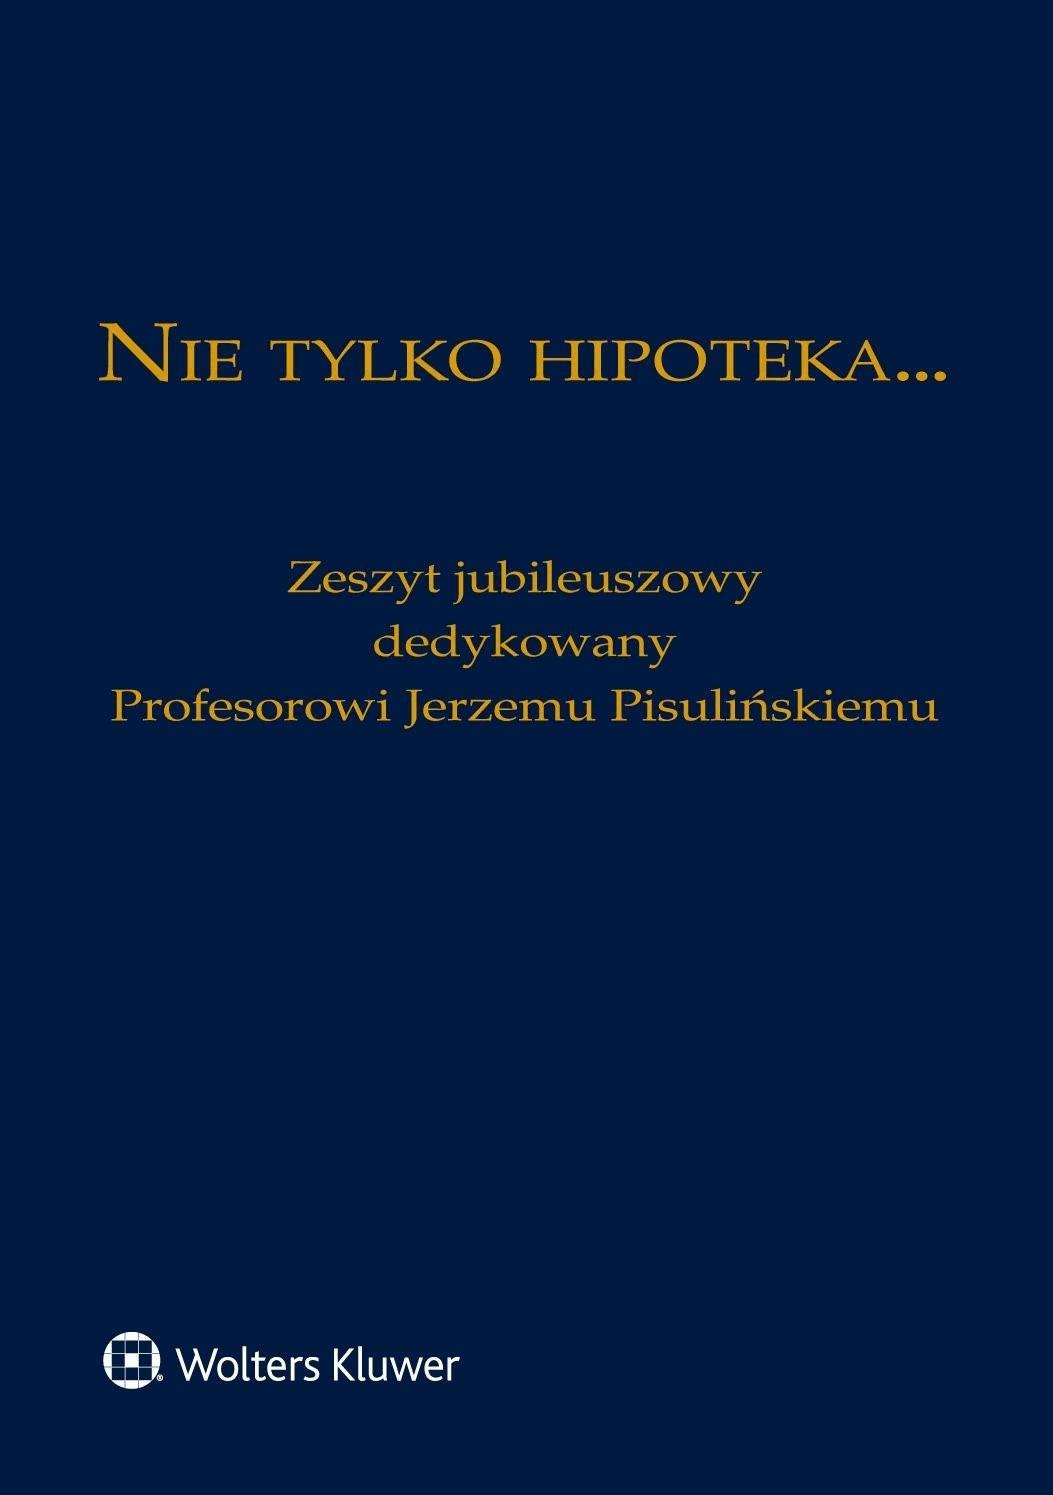 Okładka:Nie tylko hipoteka... Zeszyt jubileuszowy dedykowany Profesorowi Jerzemu Pisulińskiemu 